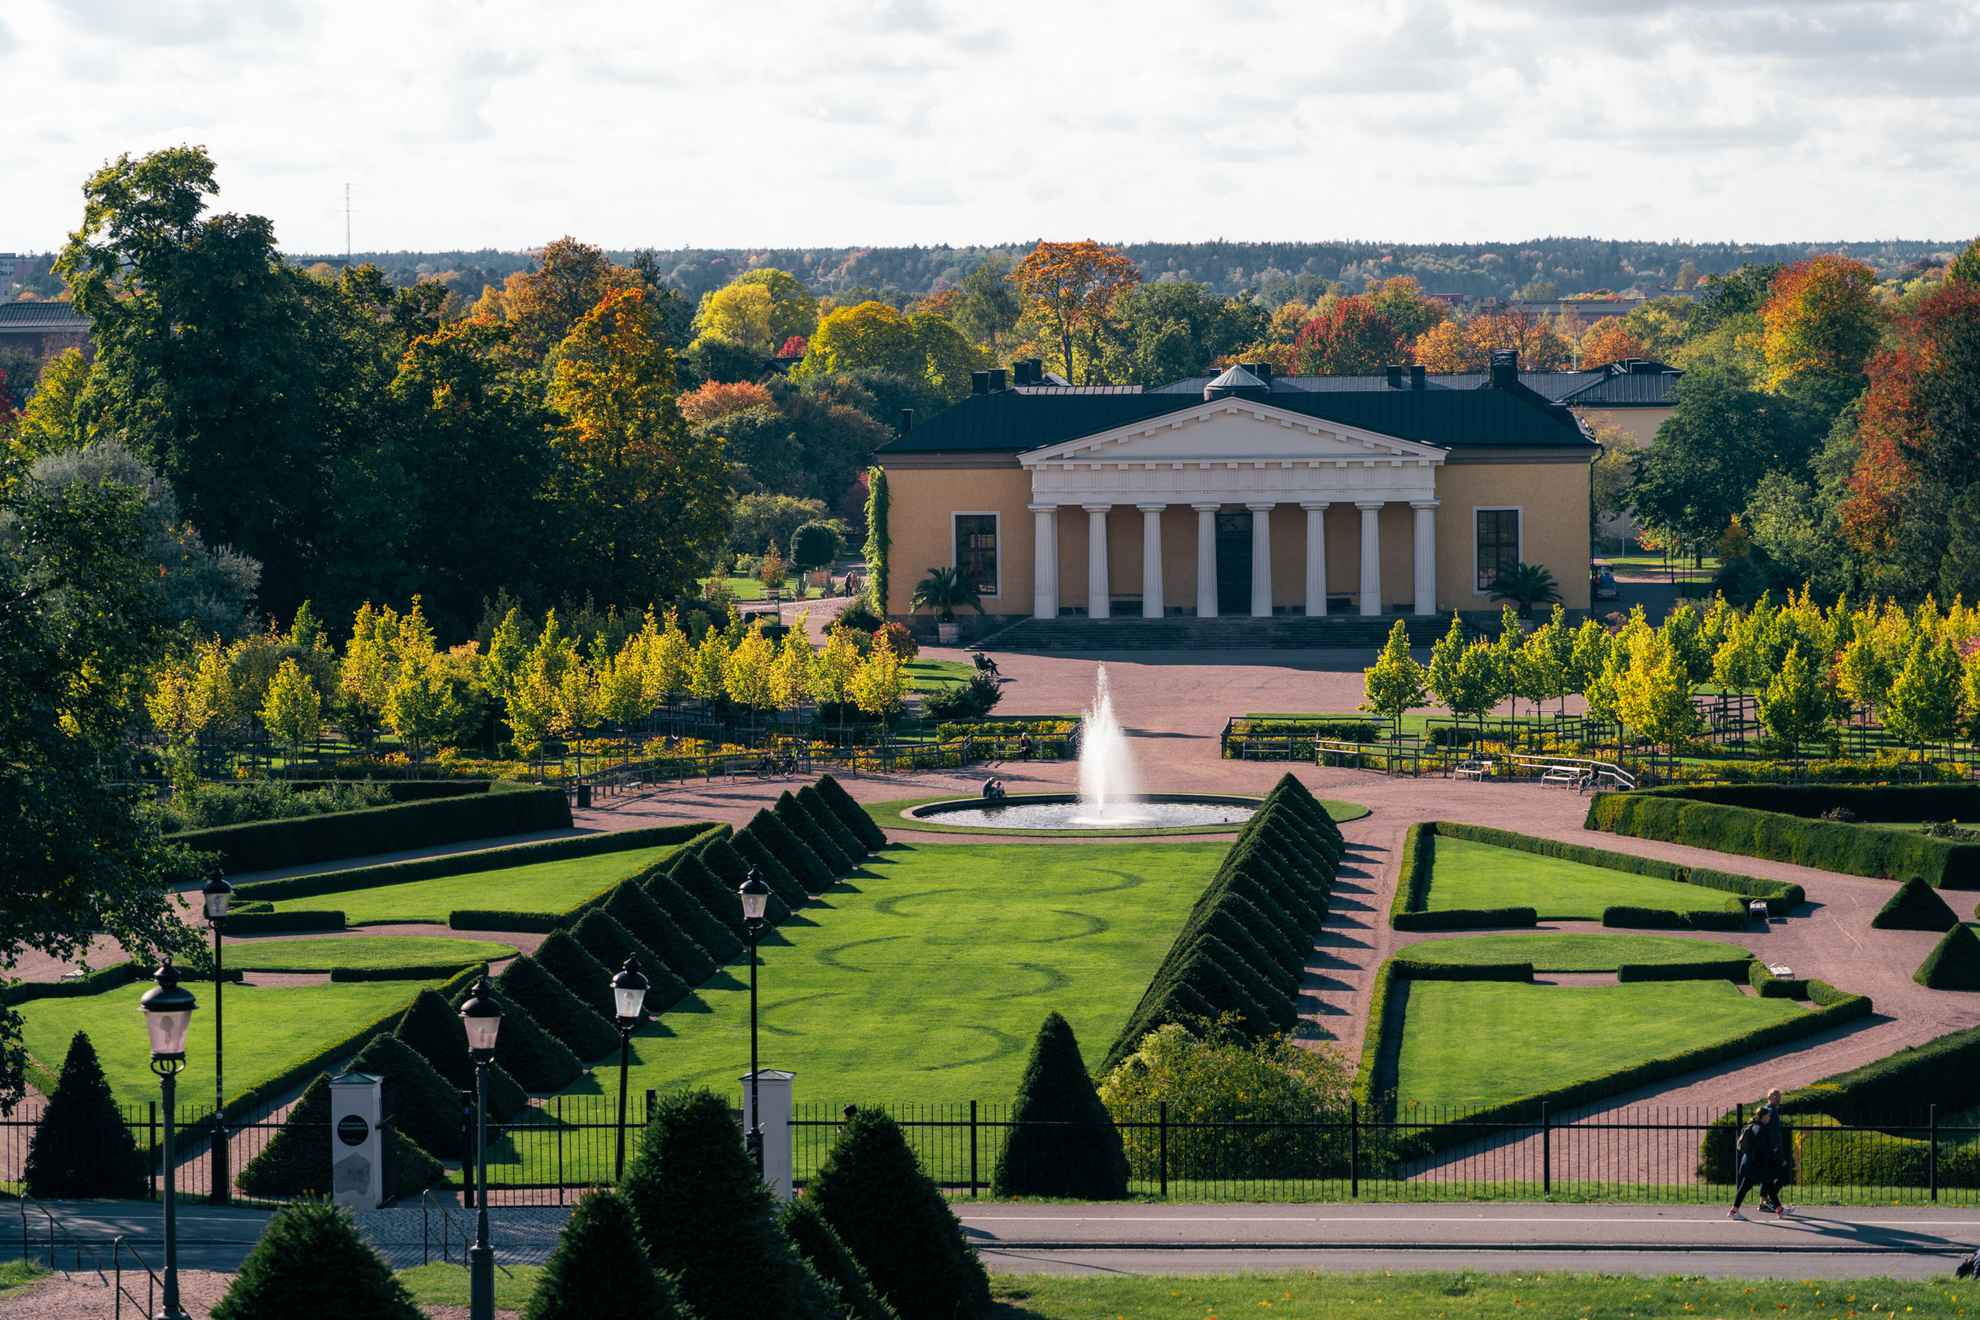 Botanischer Garten in Uppsala. Herbst mit bunten Blättern gemischt mit Grün. Blick über den Barockgarten. Das Gebäude Linneanum im Hintergrund.